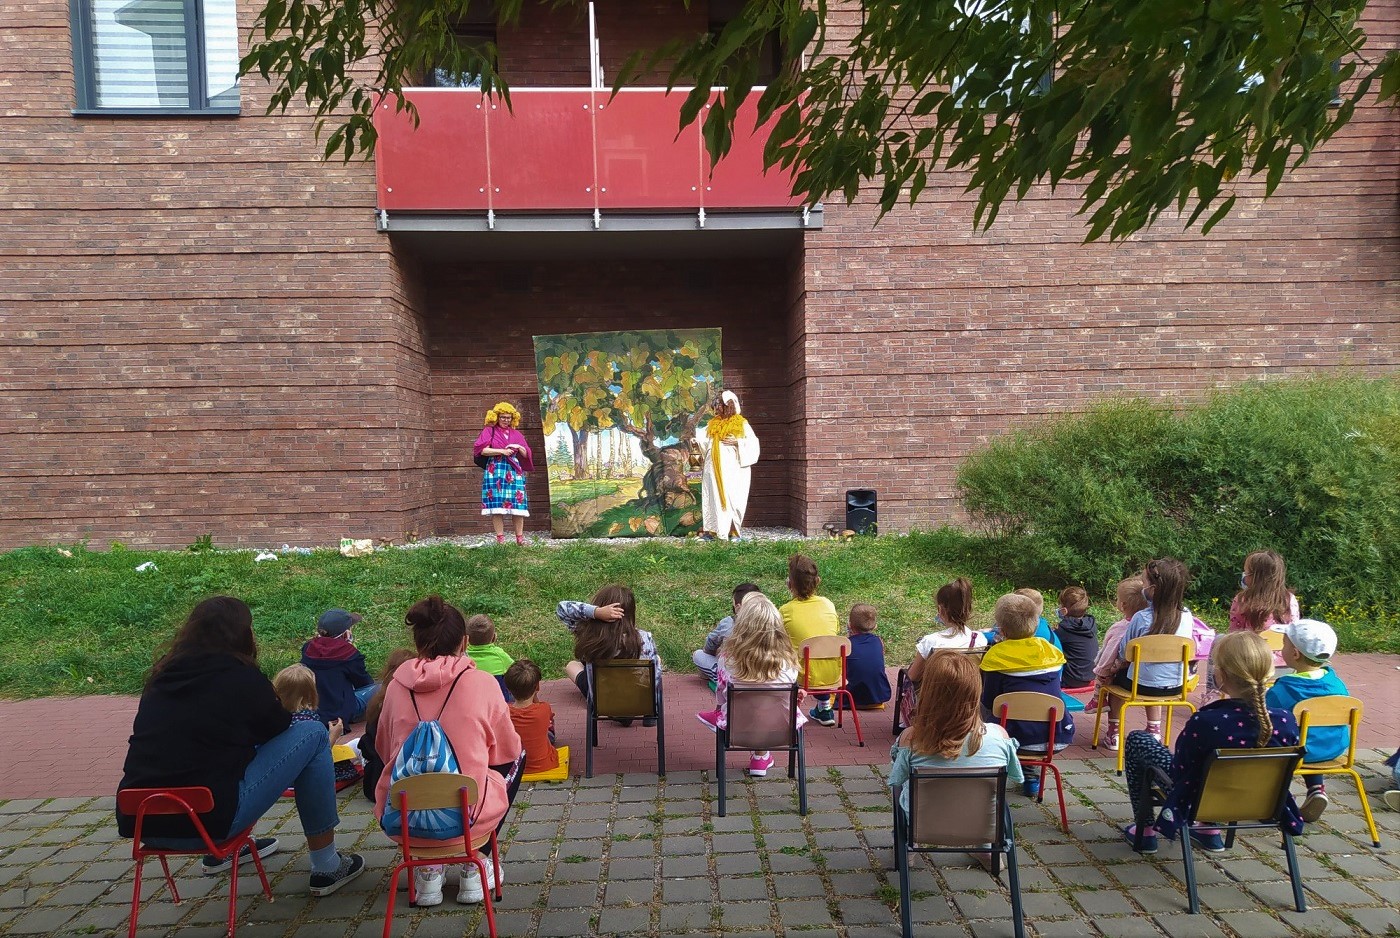 Przedstawienie przed biblioteką, dwóch performerów oraz widownia na krzesłach